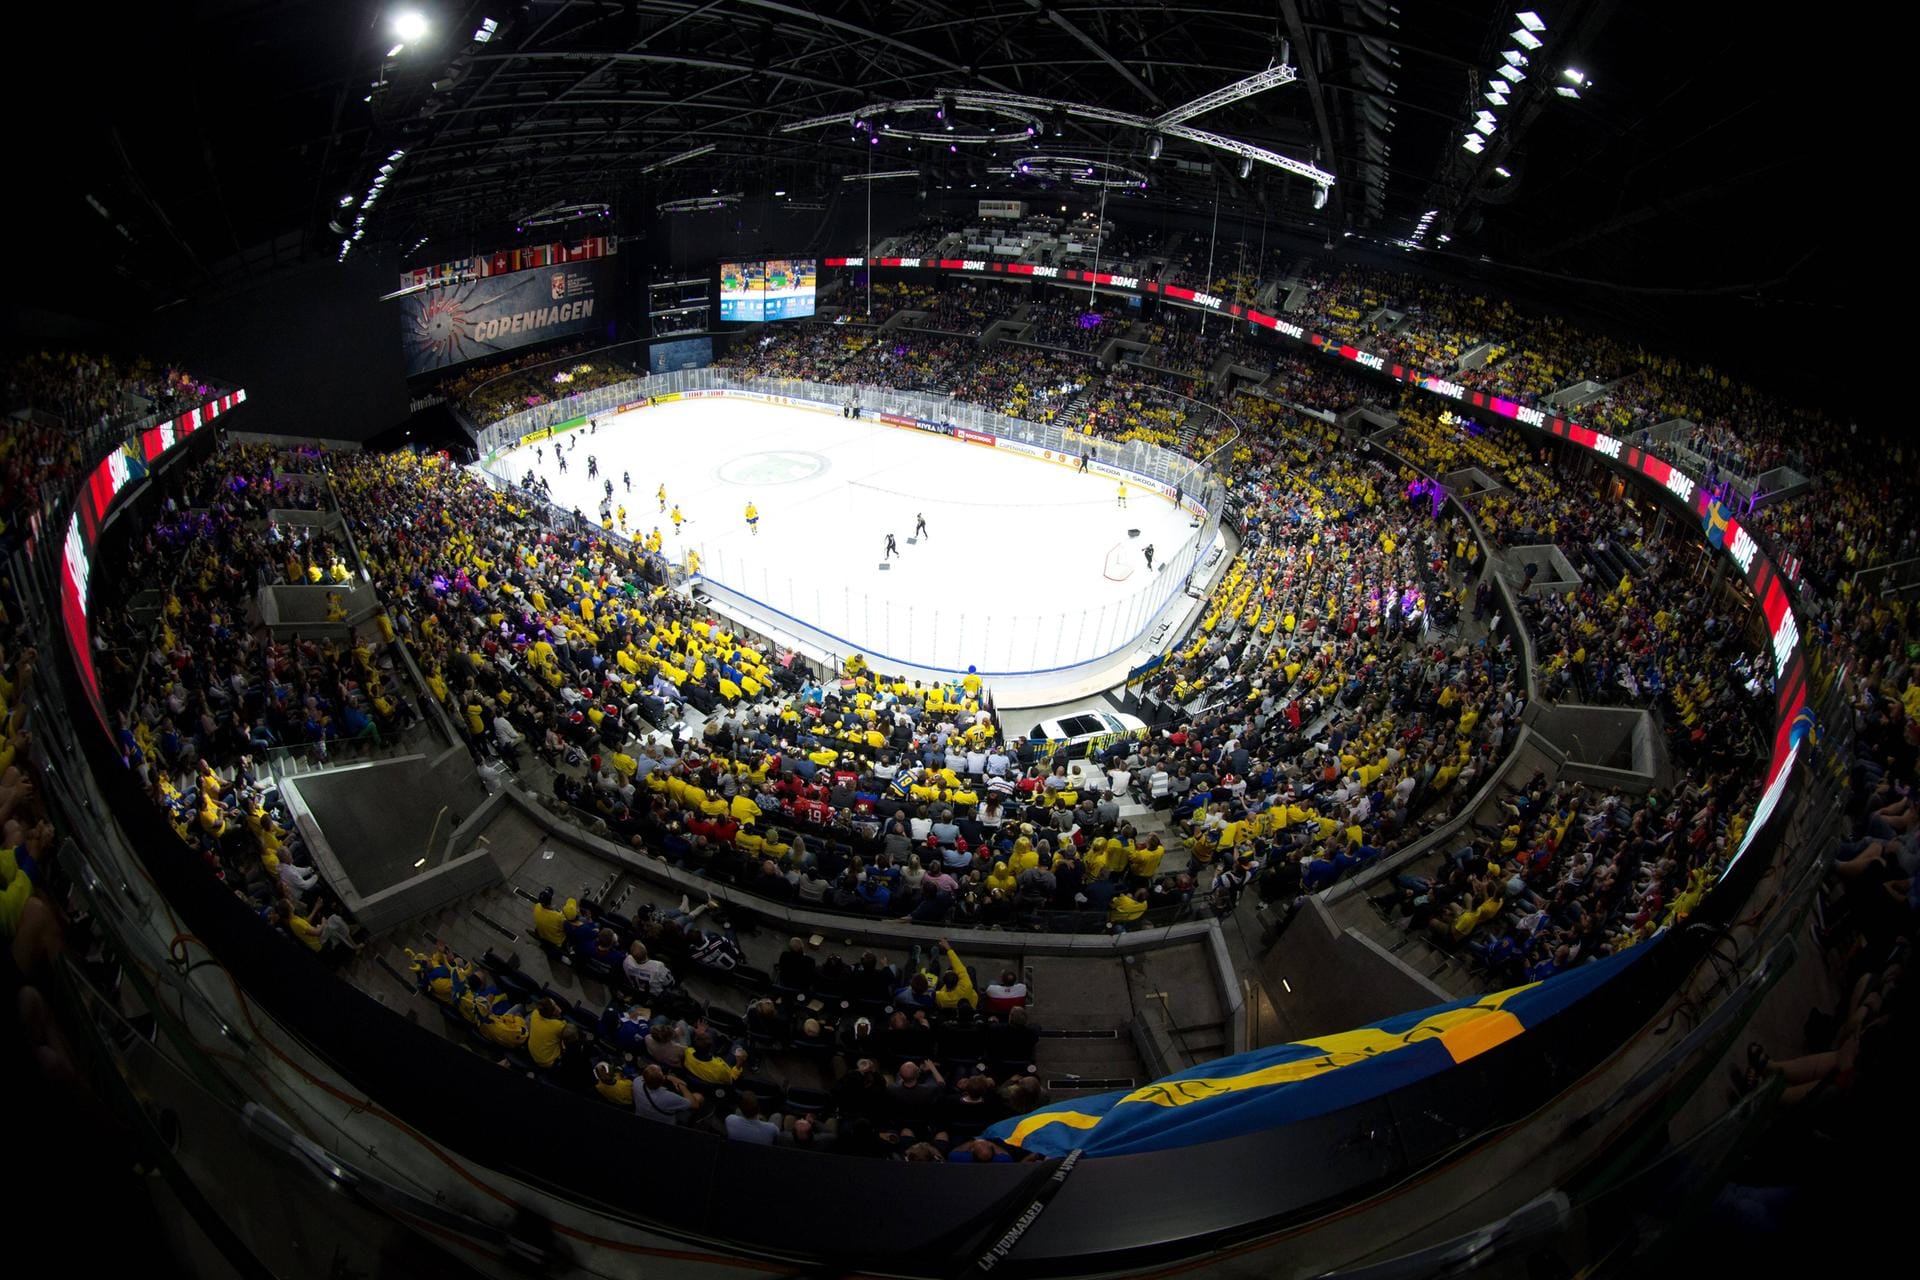 Normalerweise finden in der Royal Arena große Konzerte statt. Neben der Handball-WM wird hier auch 2021 die Turn-WM ausgetragen.